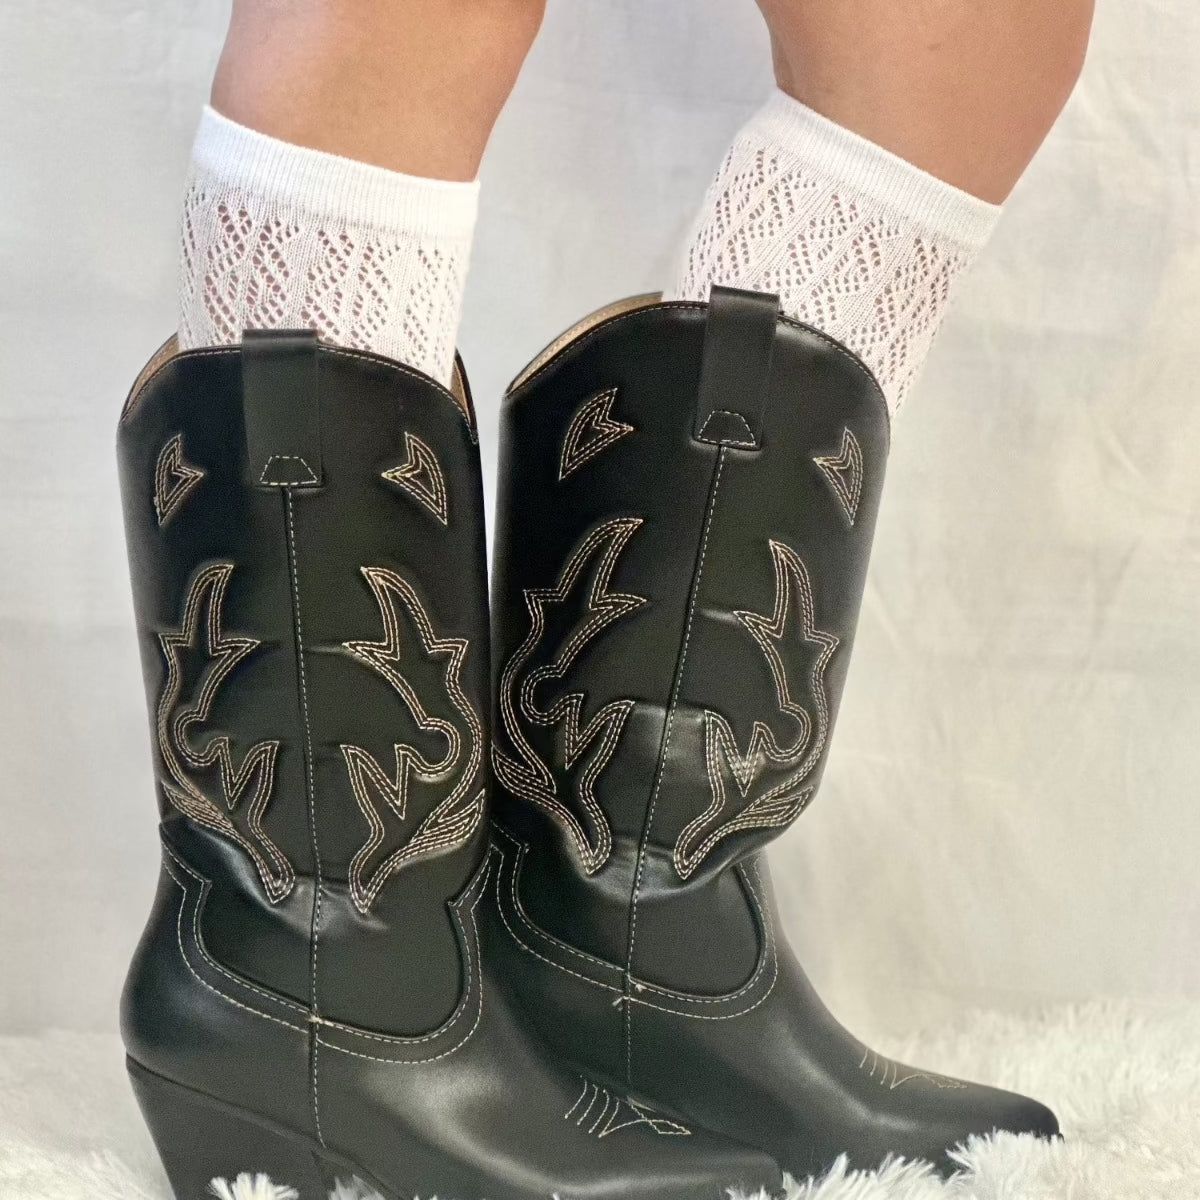 cowboy western boot socks ladies style trend, socks to wear with cowboy western boots, cool socks to wear with boots women, Amazon socks.